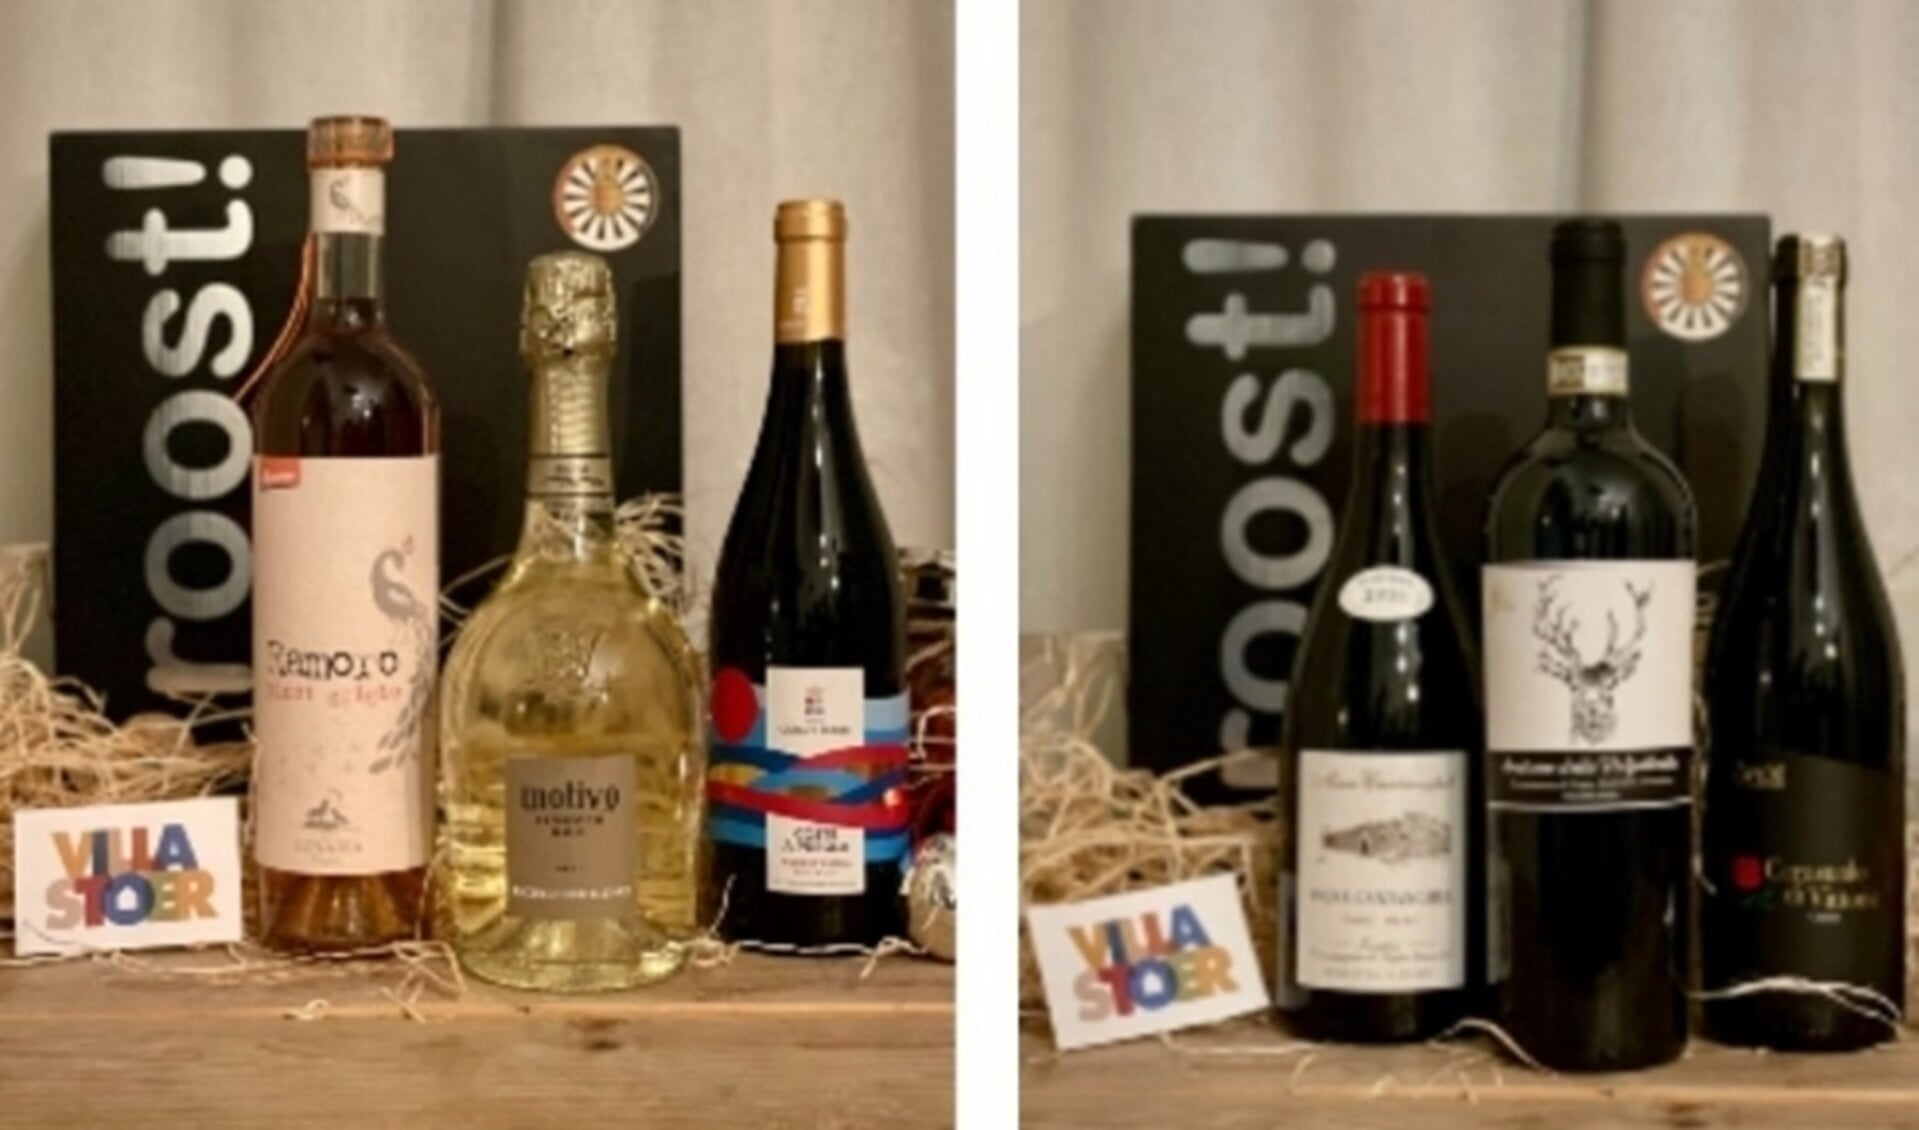 Voorbeelden van de wijnpakketten waarvan de opbrengst deels naar Villa Stoer gaat...